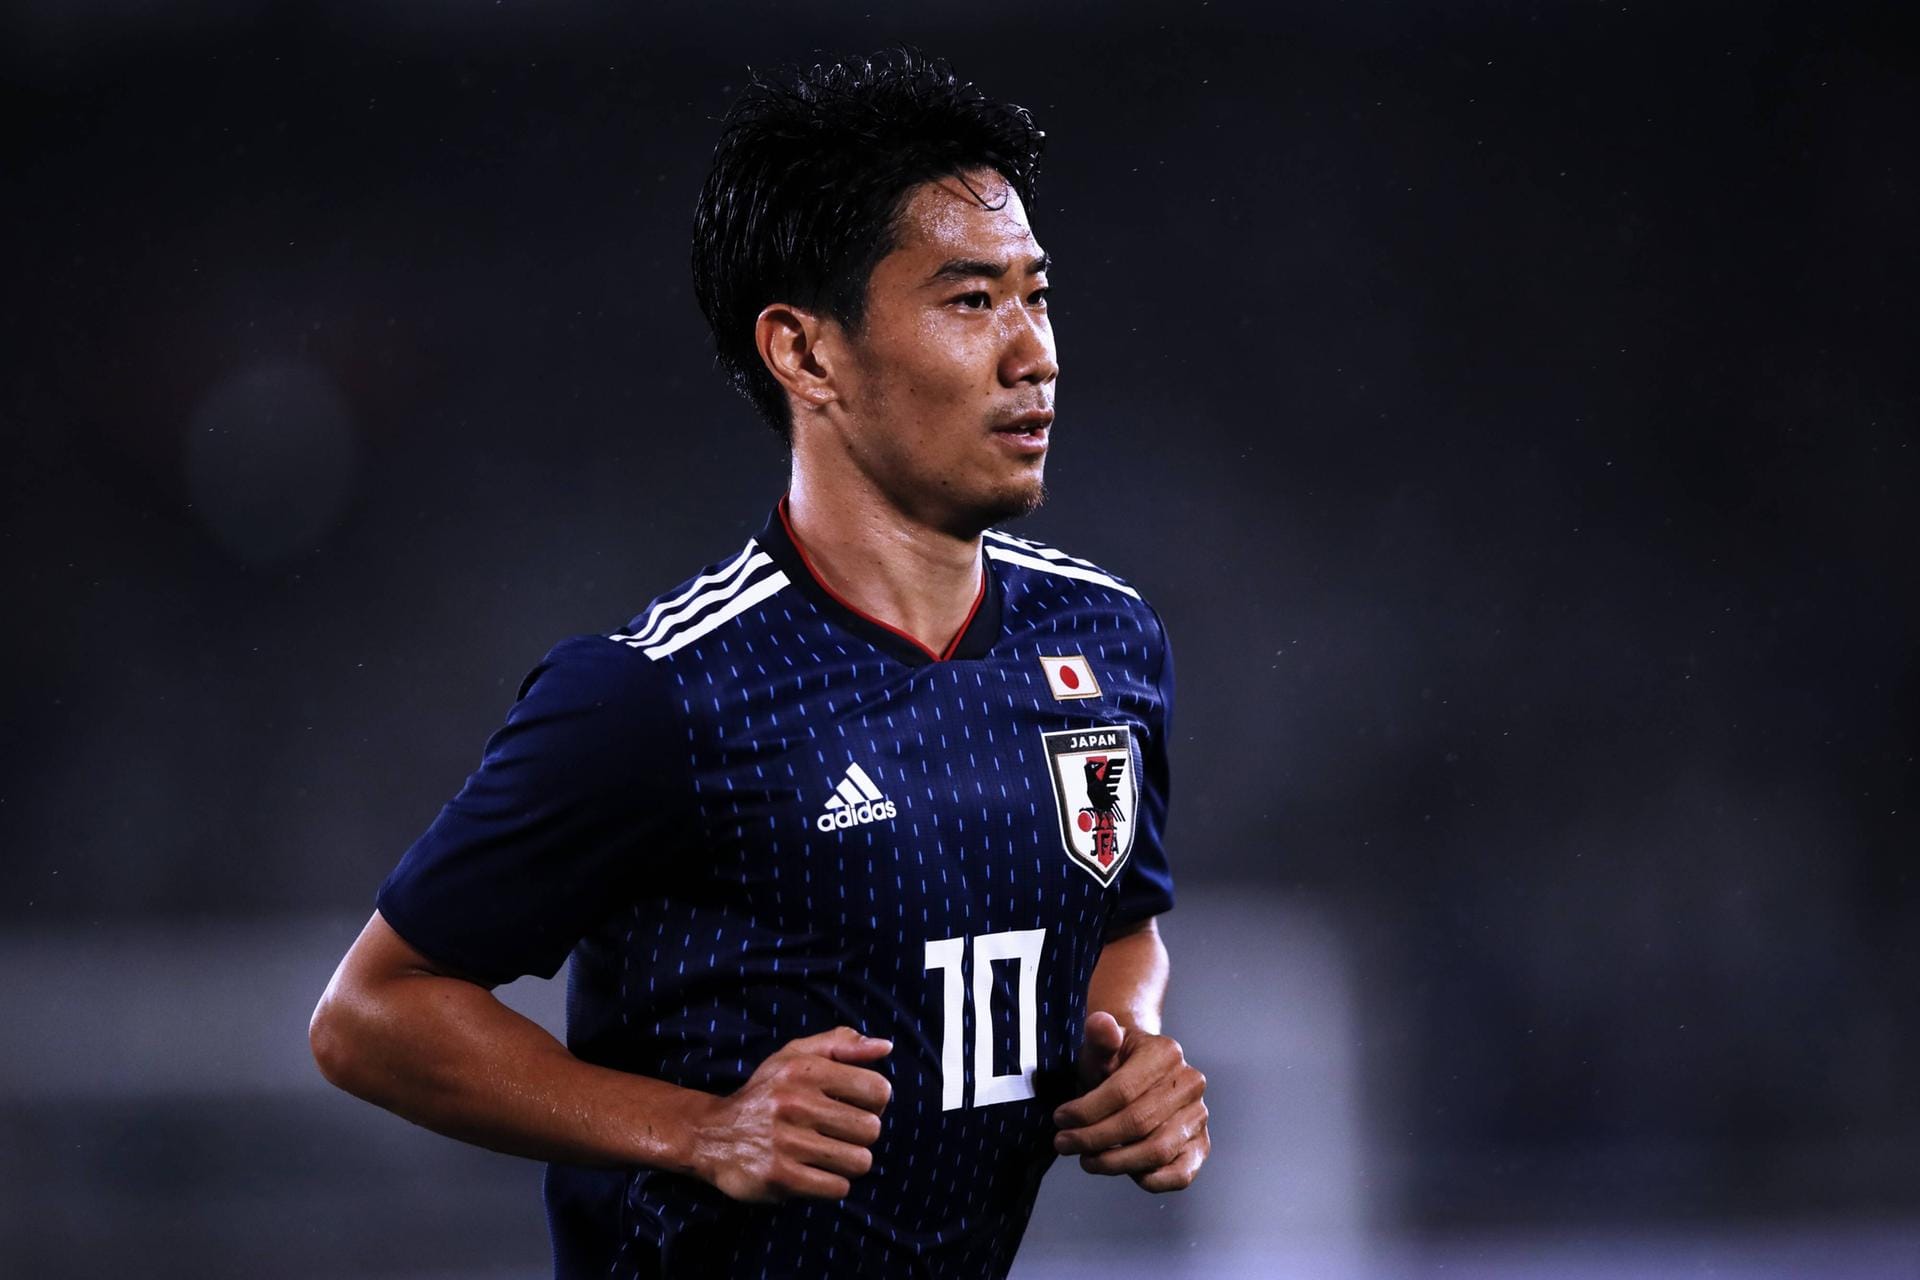 Shinji Kagawa (Japan): Der Mittfeldspieler wechselte 2014 von Manchester United zu Borussia Dortmund. Der 29-Jährige spielte bereits 90 Mal für sein Heimatland und ist Japans Topstar.